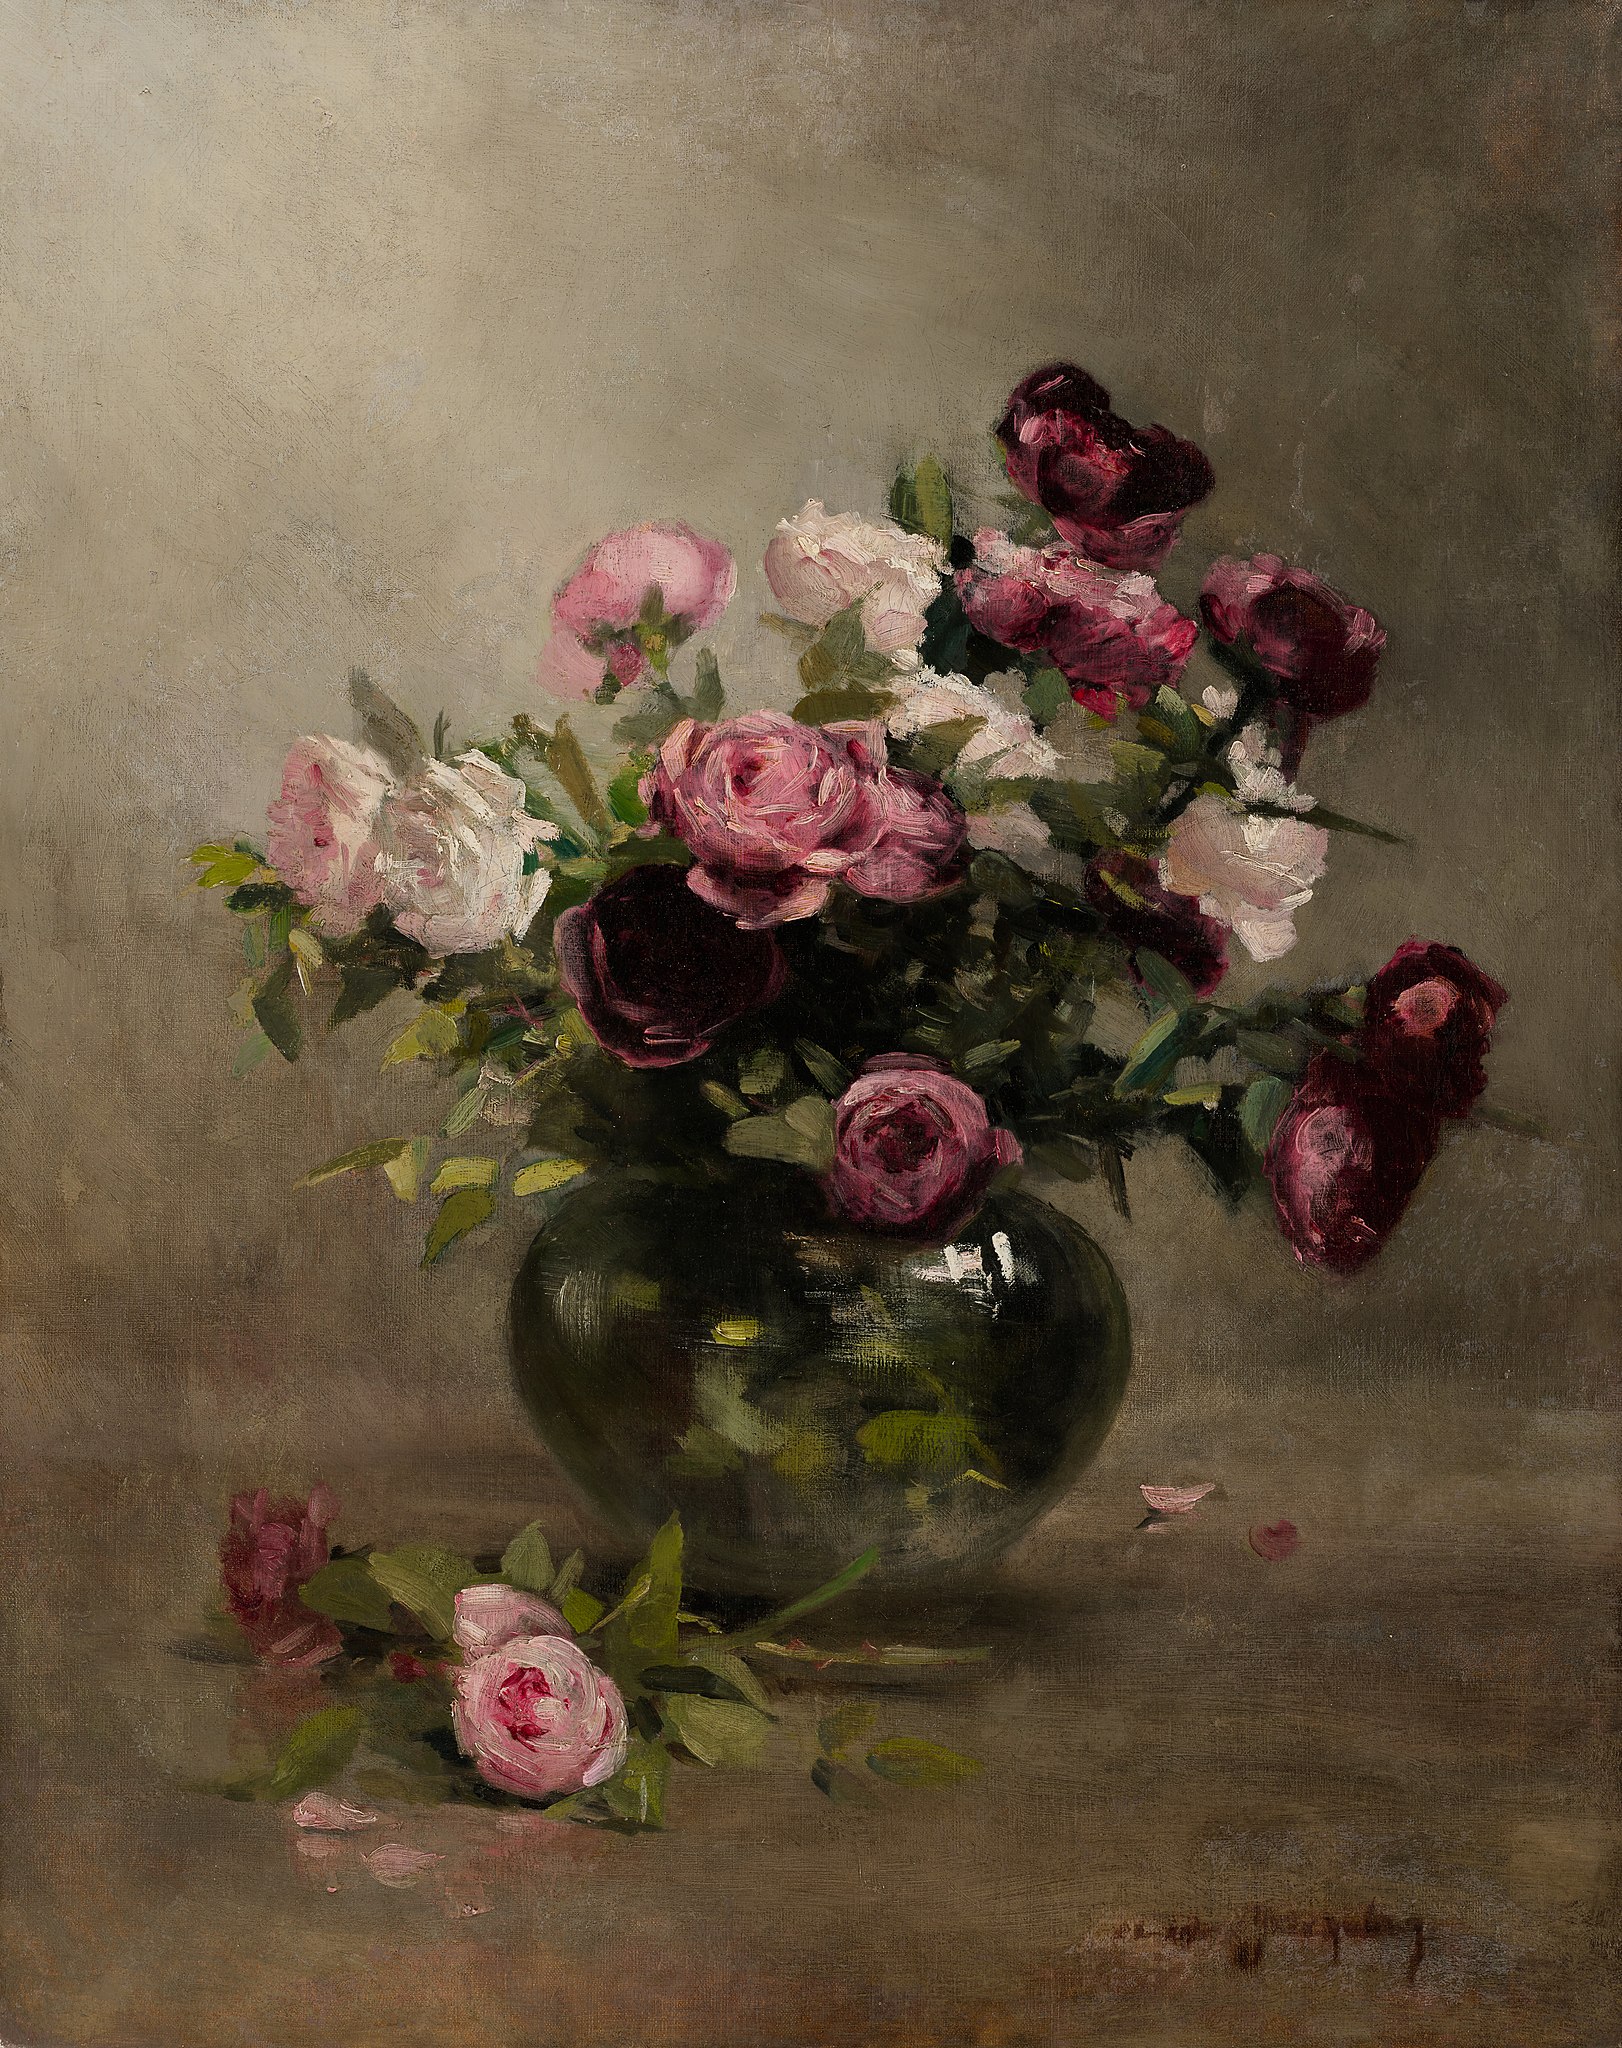 Váza s růžemi by Eva Gonzalès - krátce po roce 1870 - 79,85 × 63,34 cm 